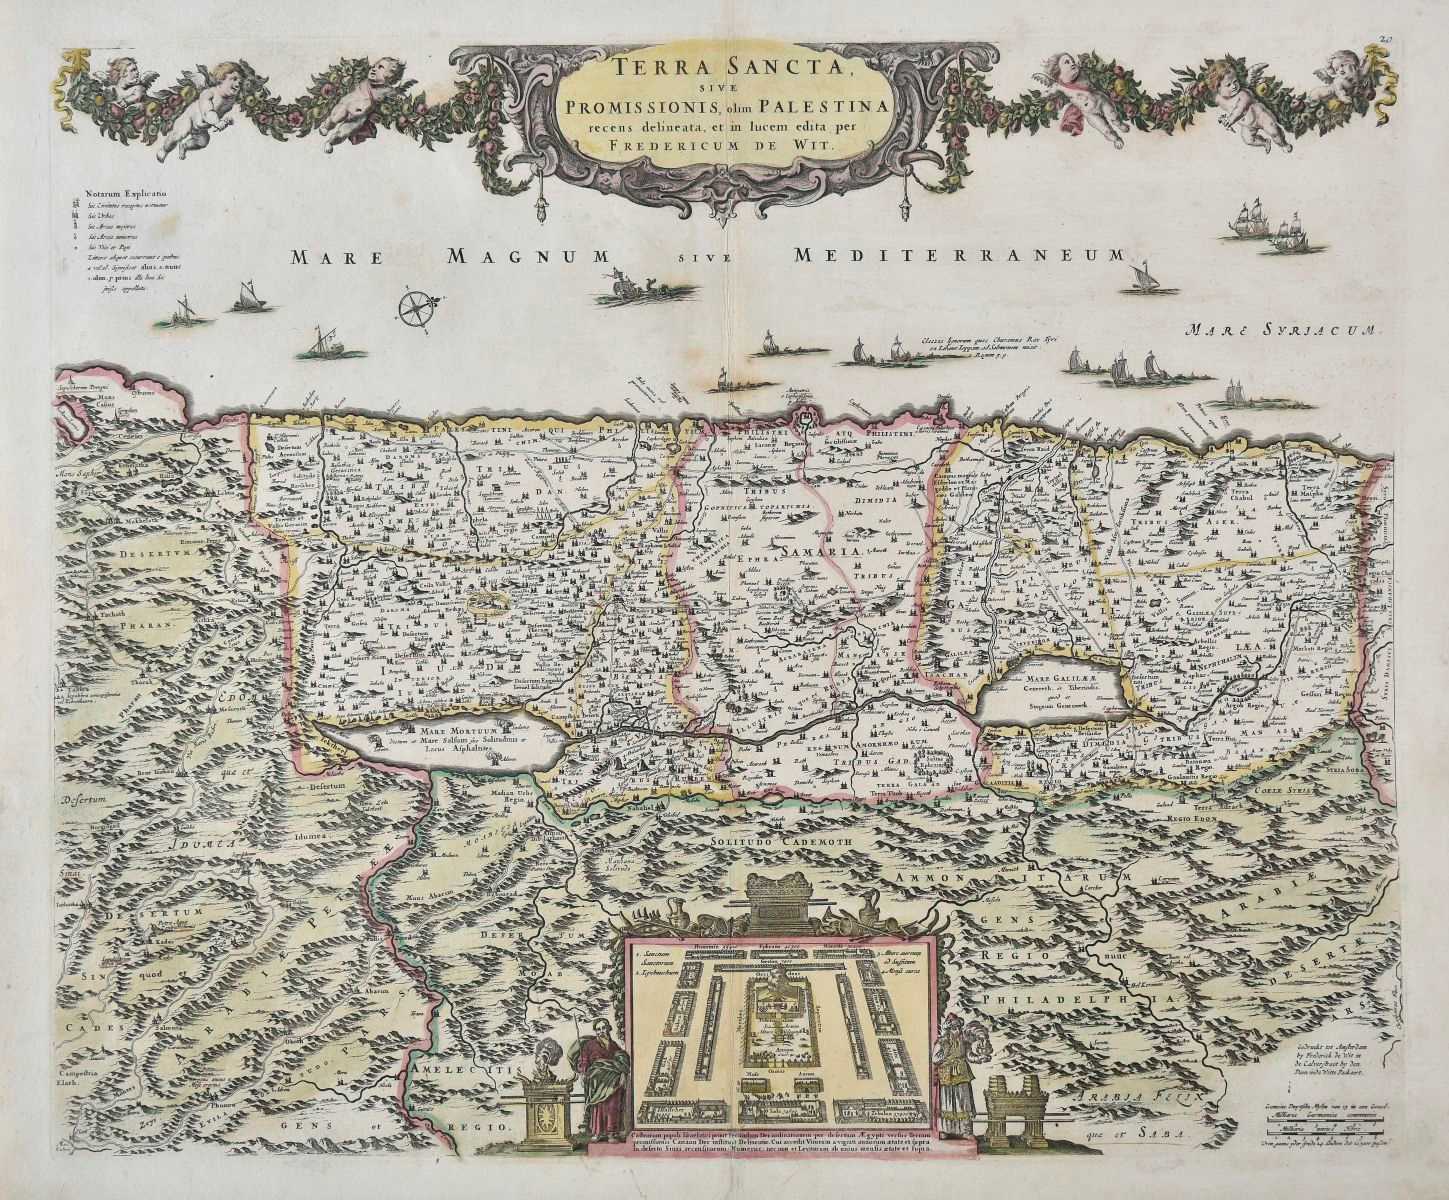 Lot 49 - Holy Land. De Wit (Frederick), Terra Sancta sive promissionis..., circa 1680